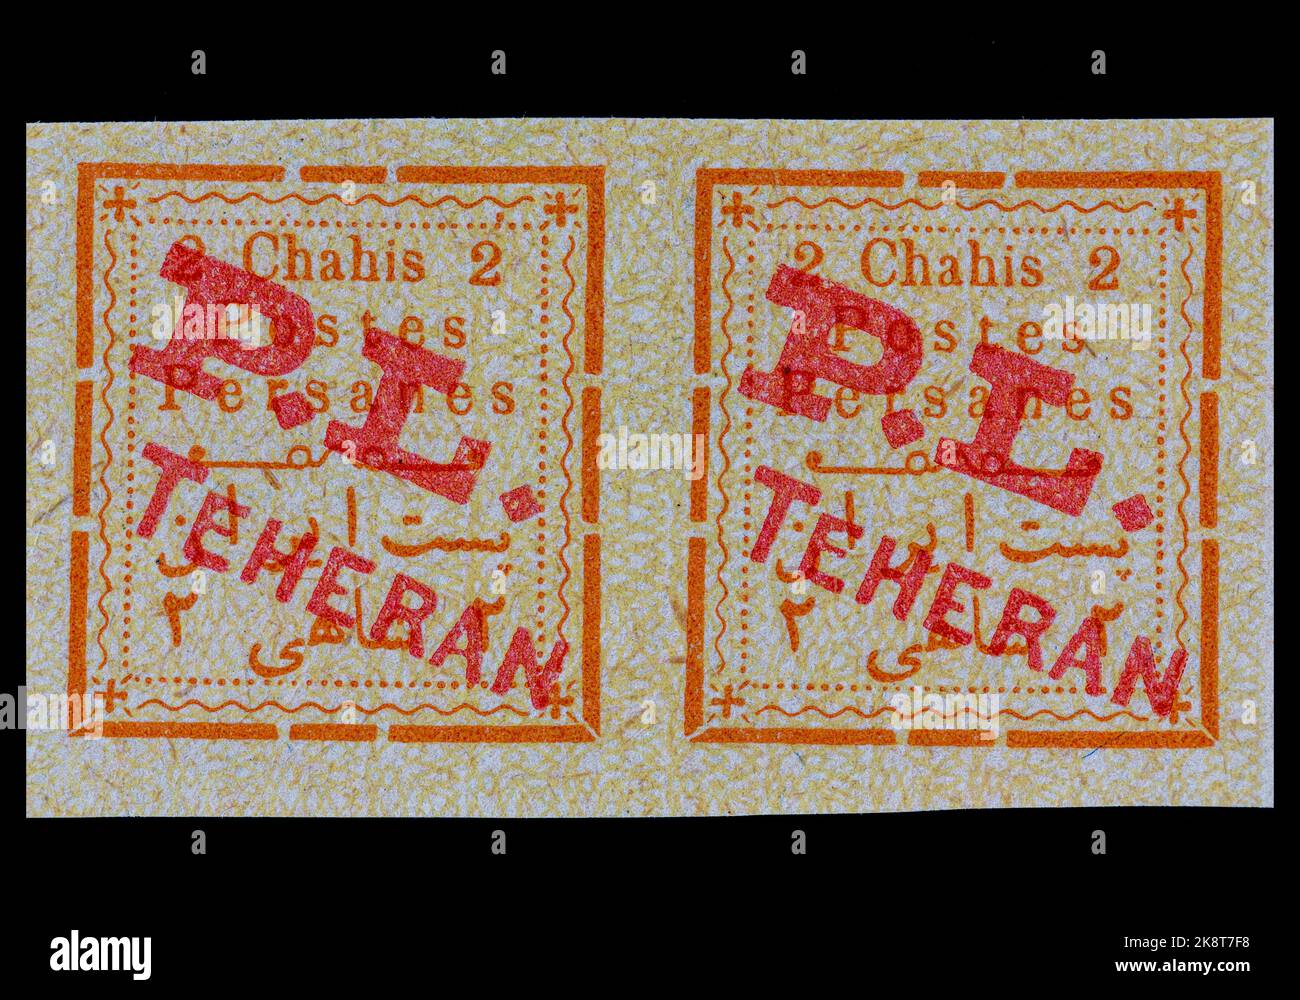 Briefmarke des Iran um 1902. Nicht ausgegebenes Paar mit PL Teheran-Überdruck. Imperforate mit einem Nennwert von 2 Chabis. Sehr seltenes Paar ungenutzter Stempel Stockfoto